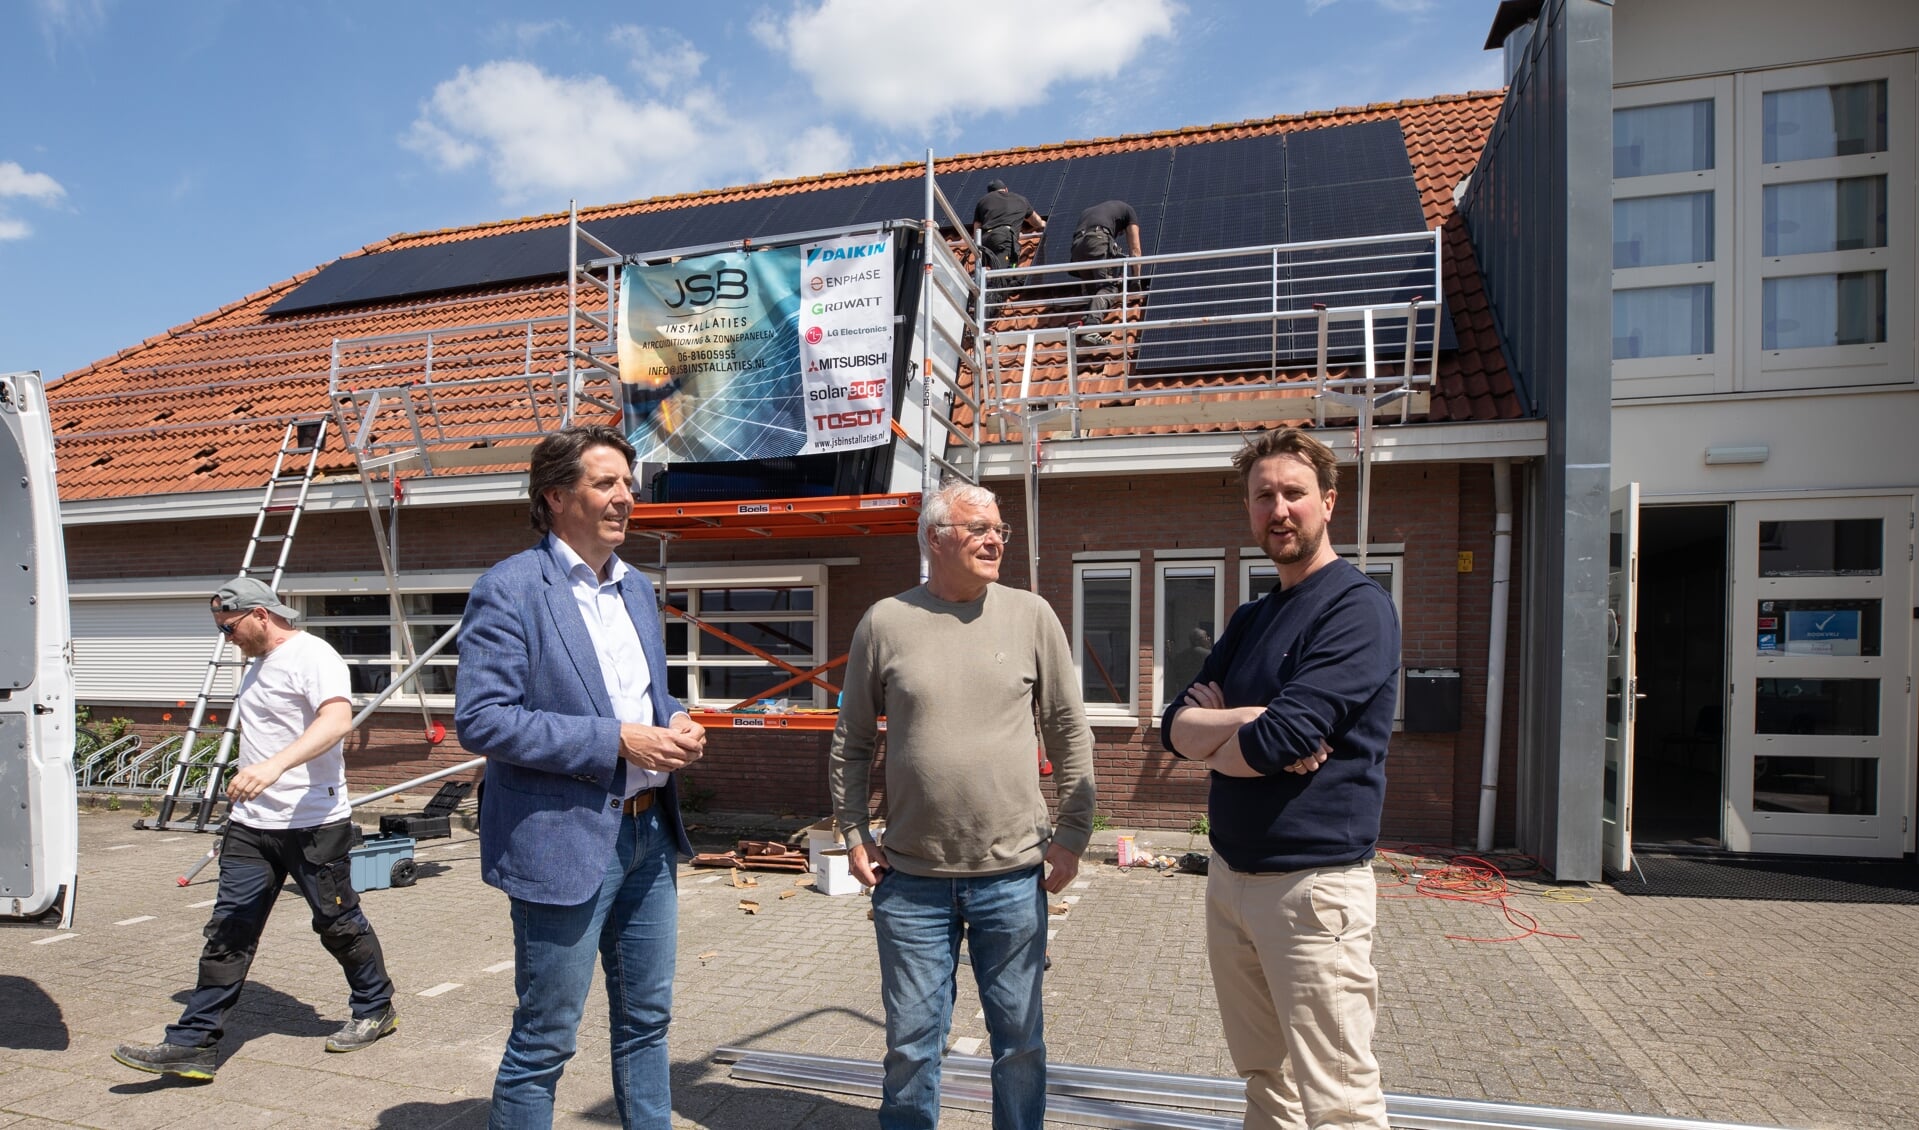 De wethouders Hugo Prakke (links) en Steven de Vries met speeltuinvoorzitter Ton Gesgarz (midden) bij de plaatsing van de zonnepanelen vrijdag. 